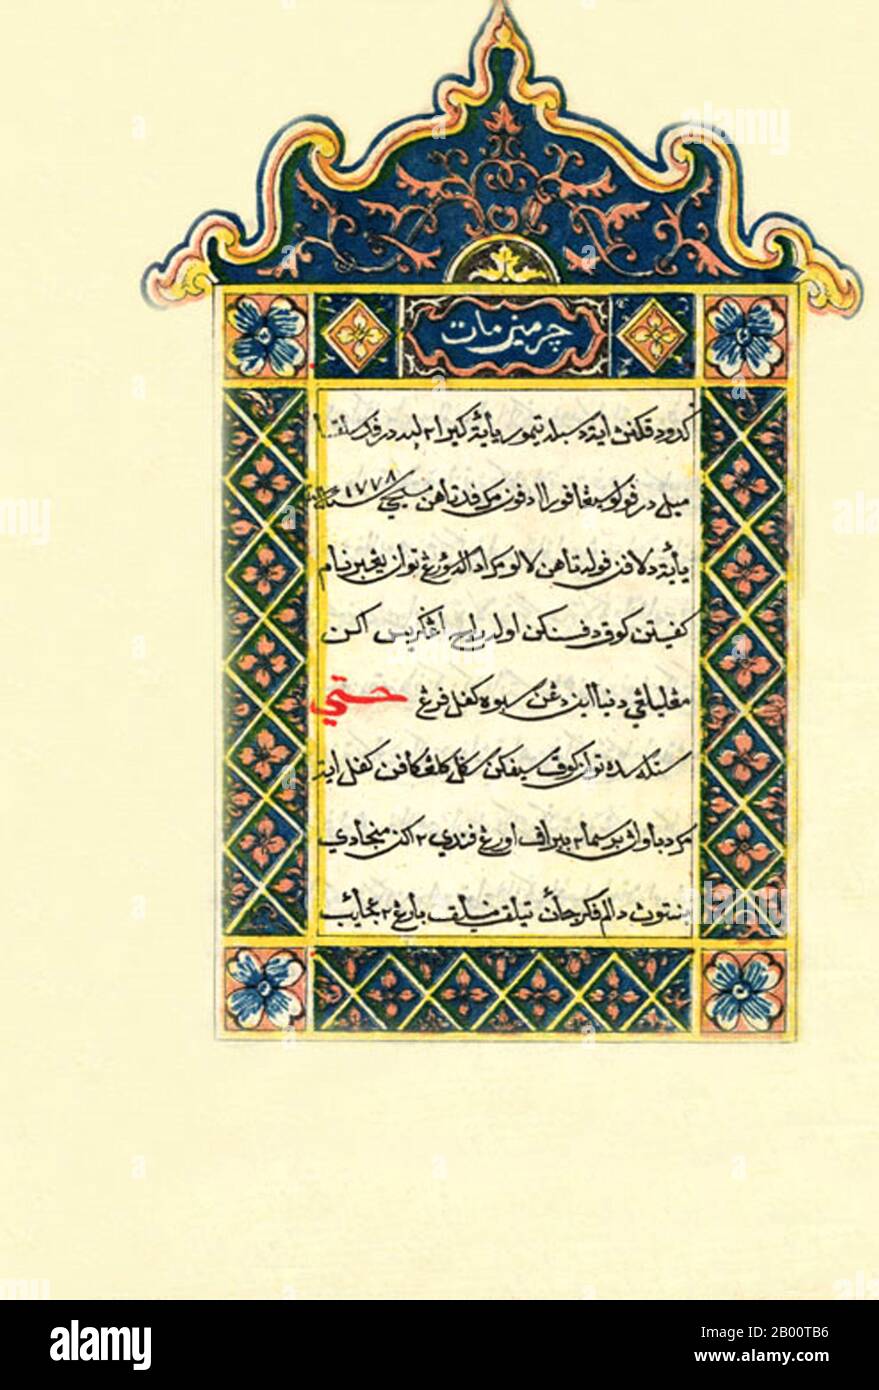 Singapour: Frontispice illuminé d'un texte chrétien du milieu du XIXe siècle en langue malaise et script Jawi. De 'Cermin mata bagi segala orang yang menuntut pengetahuan' (spectacles pour ceux qui cherchent la connaissance). Jawi est un alphabet arabe adapté pour écrire la langue malaise. Il s'est développé à Malaya et autour d'environ 1300 ce, à peu près au même moment que l'Islam est arrivé. Jawi est l'un des deux textes officiels au Brunei et en Malaisie pour la langue malaise. Cependant, aujourd'hui, il a été remplacé par un script romain appelé Rumi; Jawi est généralement considéré comme un script religieux. Banque D'Images